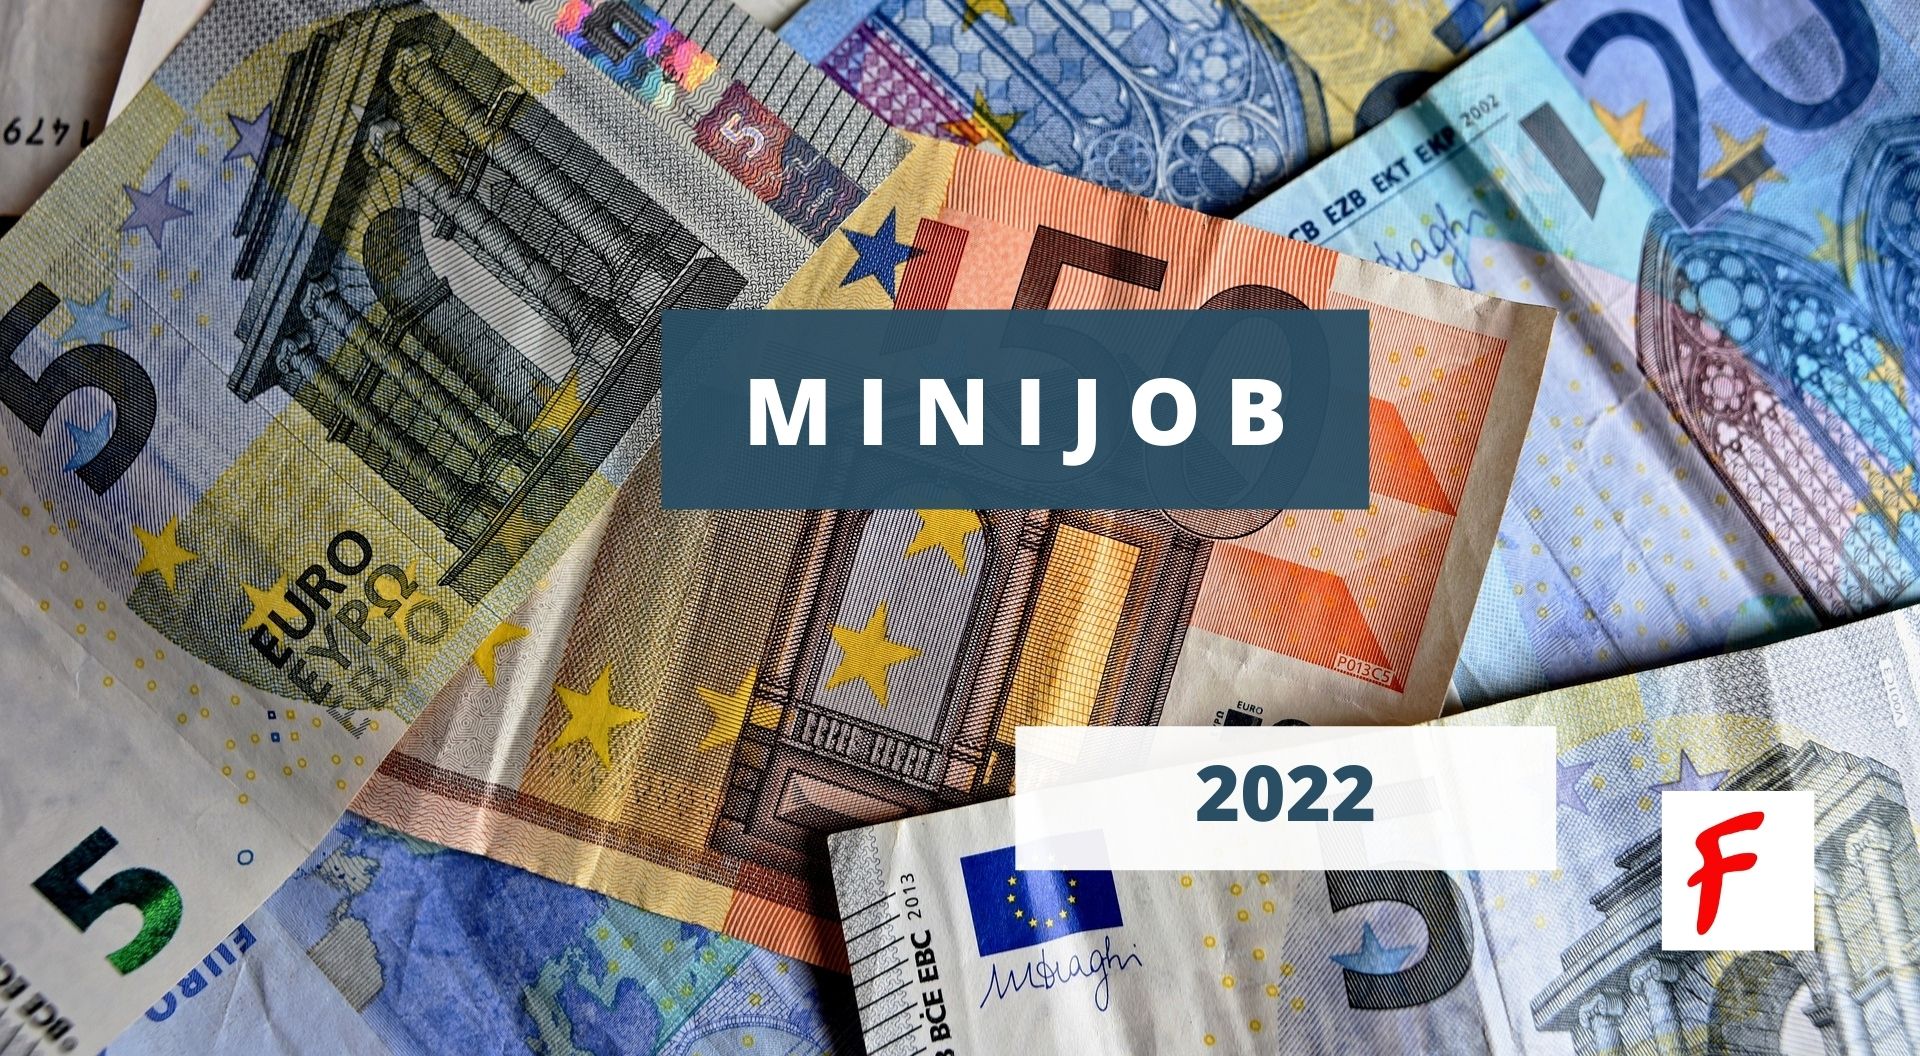 Минимальная занятость (Minijob) в 2022 году